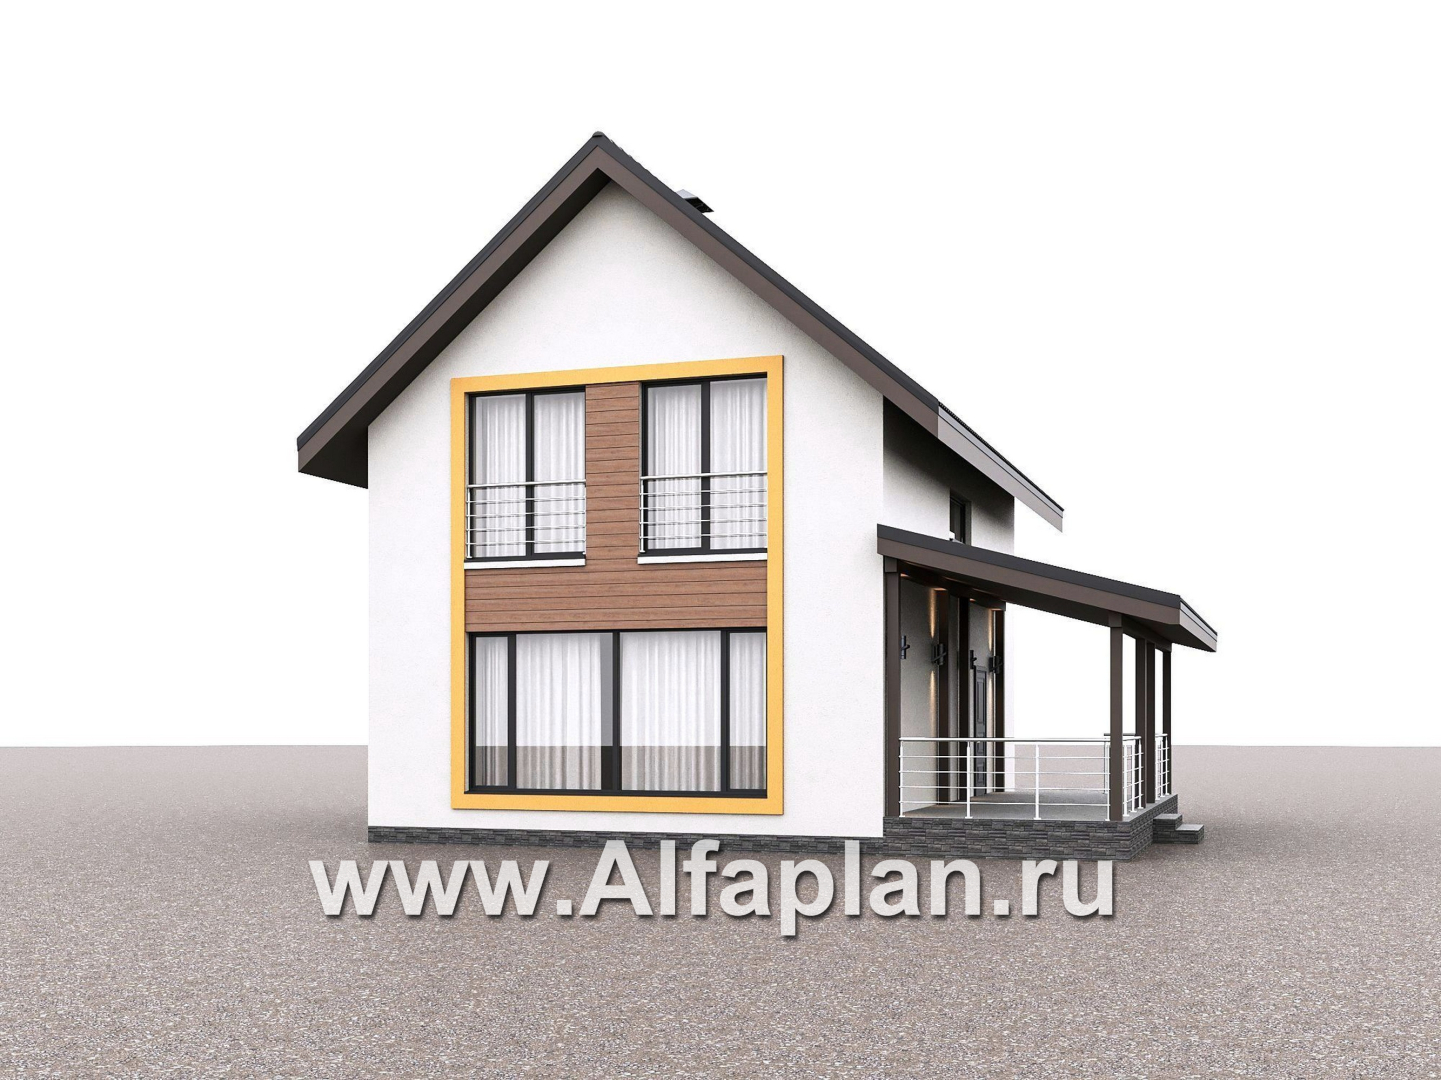 «Викинг» - проект дома, 2 этажа, с сауной и с террасой сбоку, в скандинавском стиле - дизайн дома №4